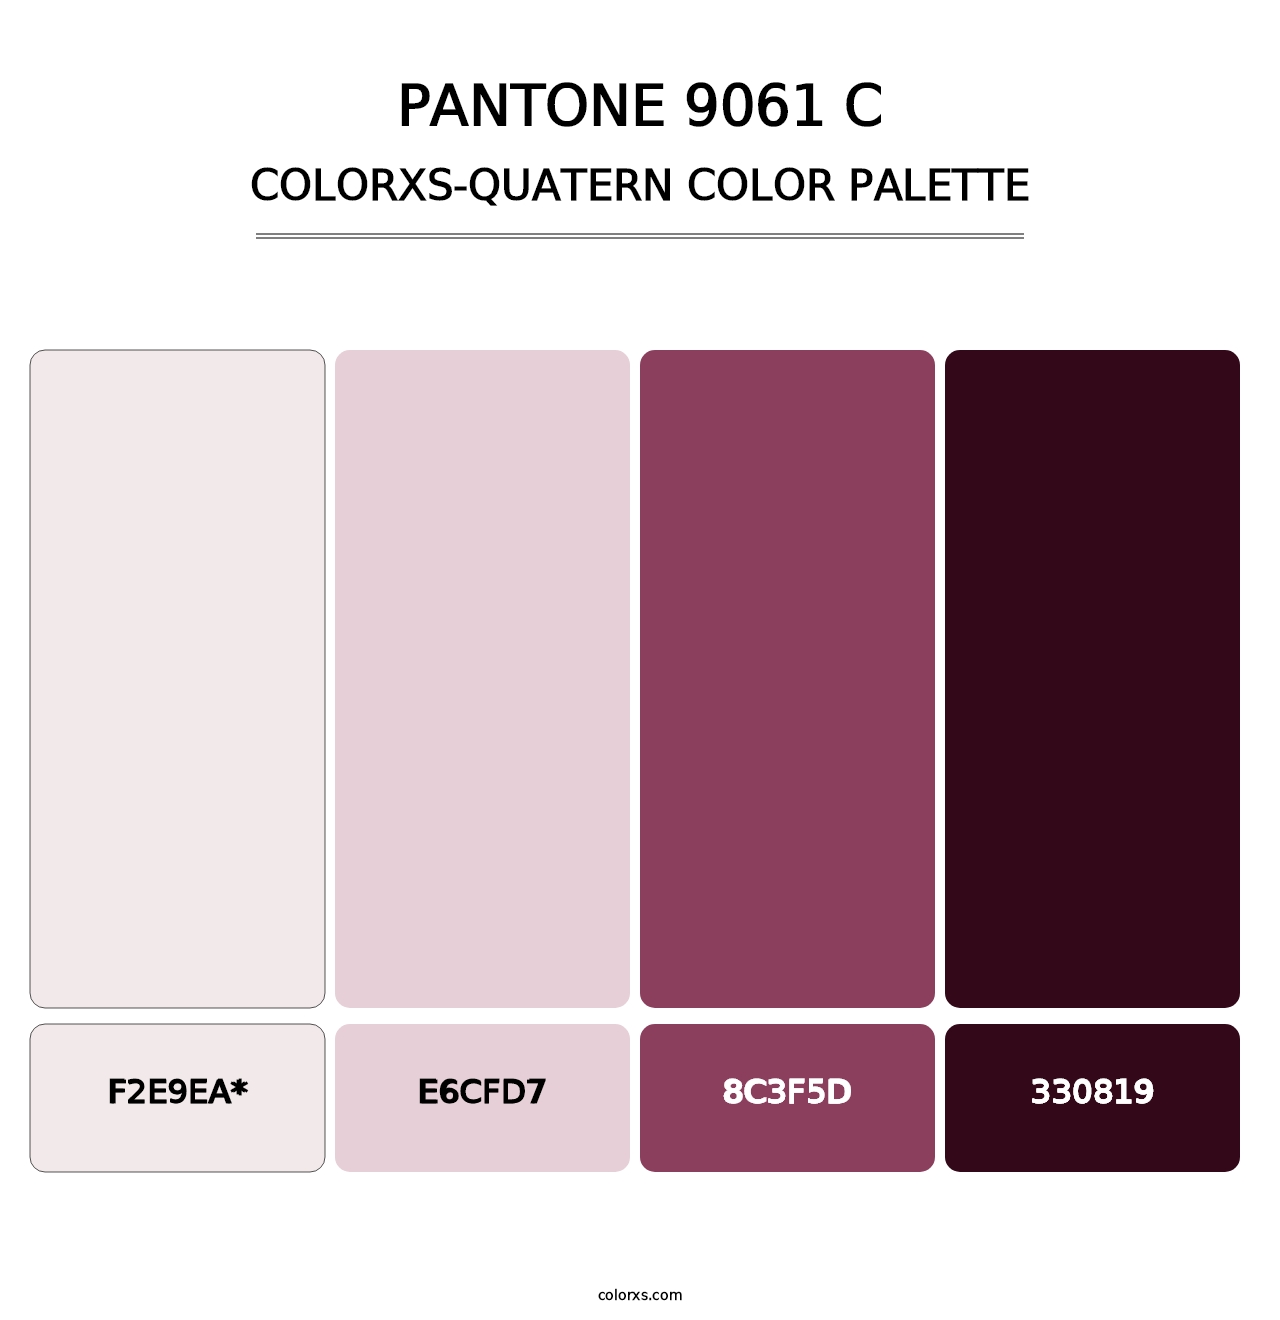 PANTONE 9061 C - Colorxs Quatern Palette